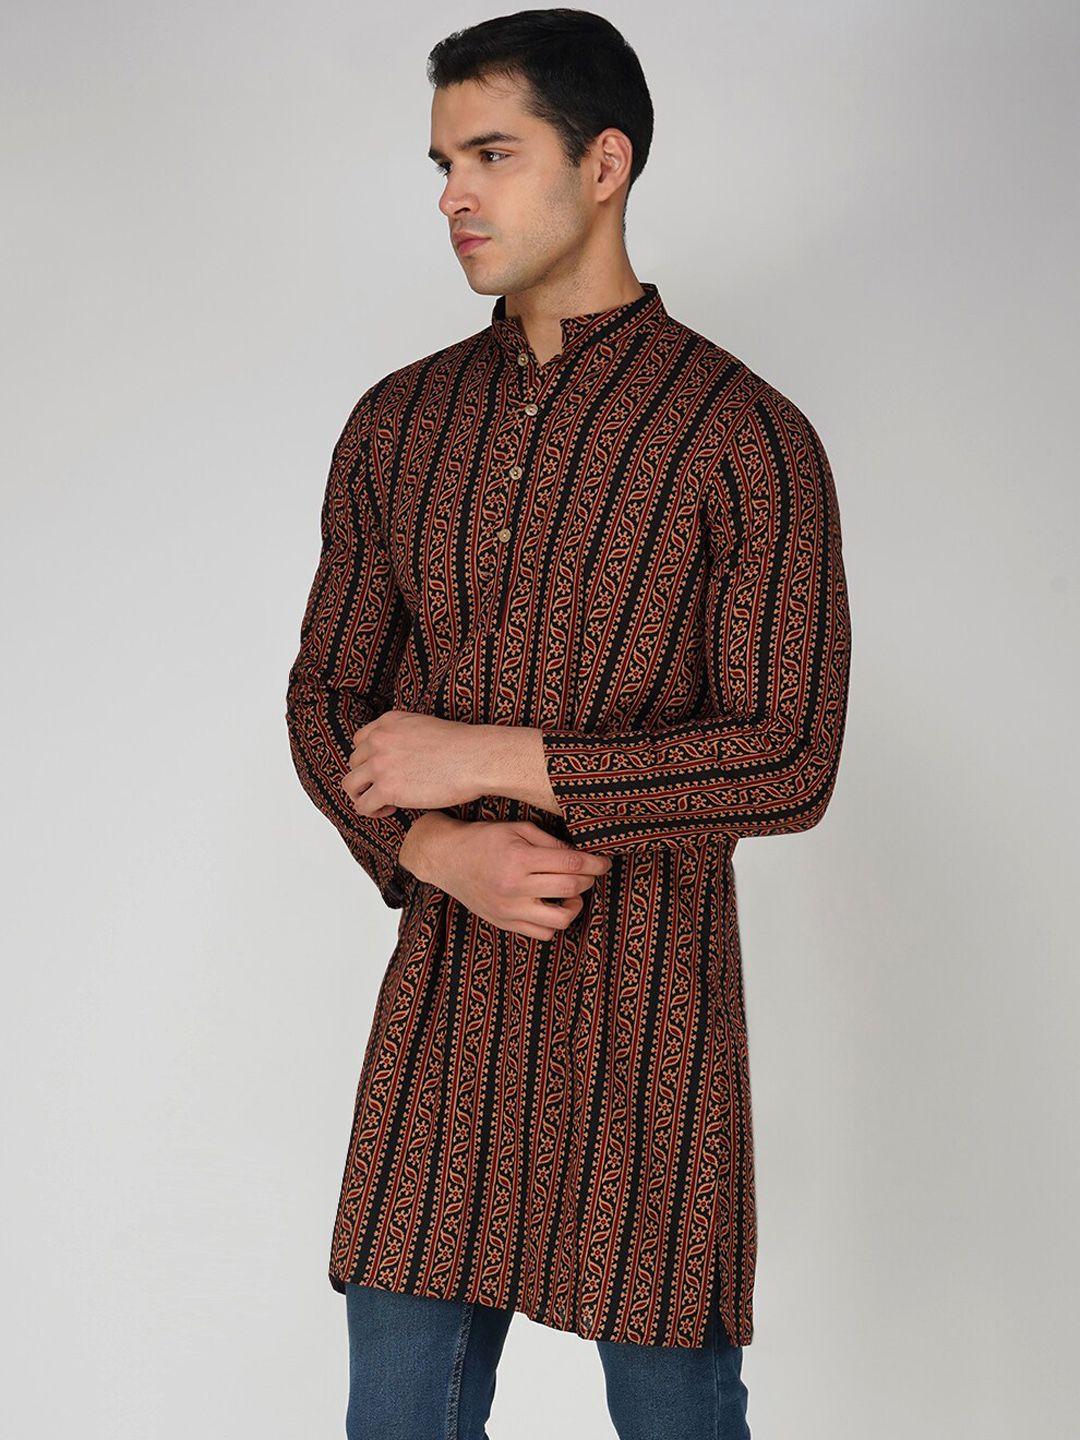 vastraa fusion ethnic motifs printed pure cotton straight kurta